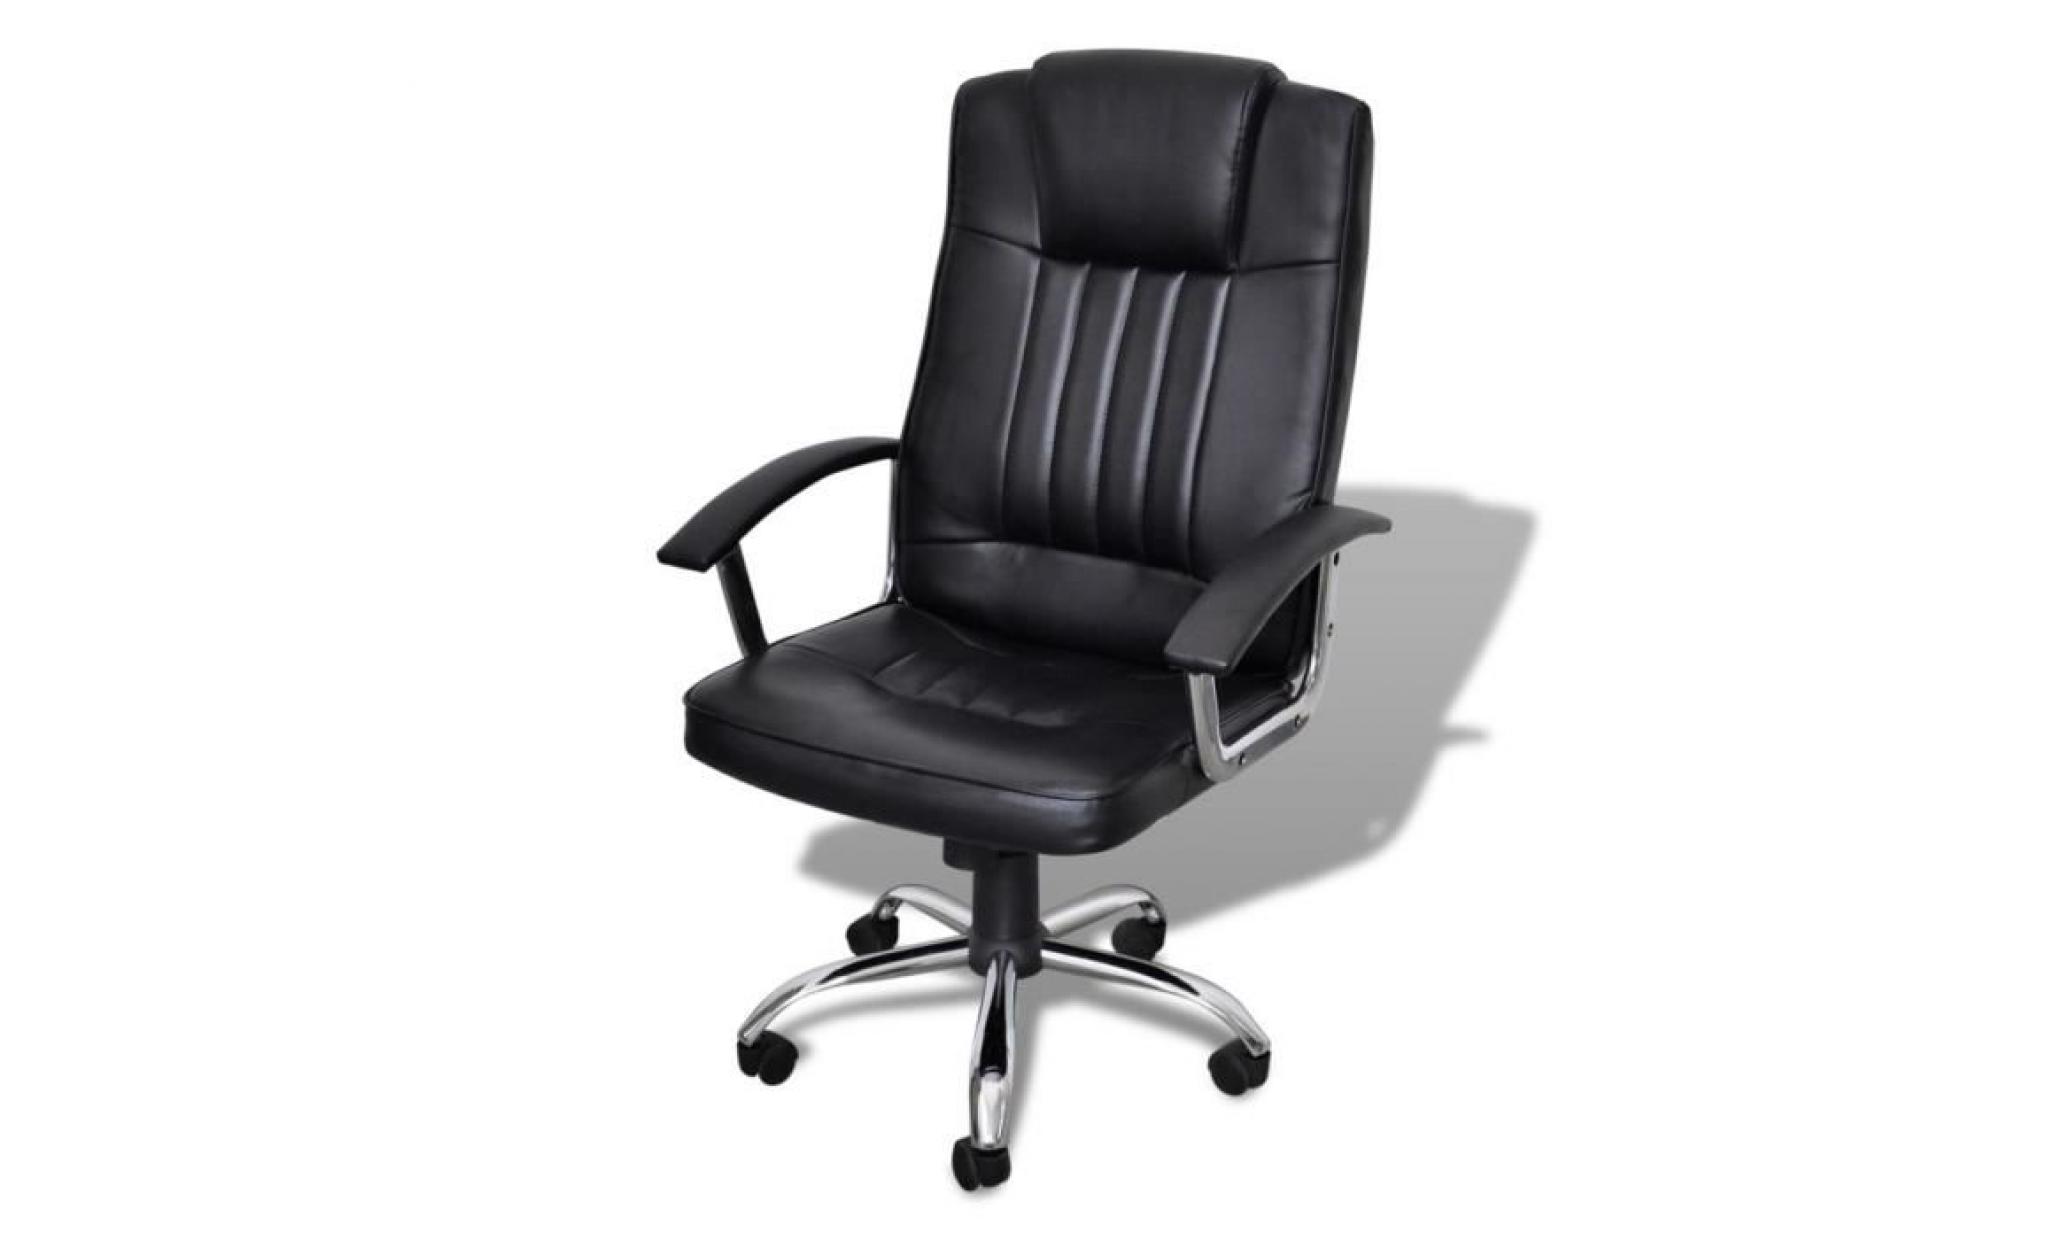 fauteuil de bureau ergonomique en similicuir   hauteur réglage   360 degrés pivotant   style d'affaire   chaise de bureau crème